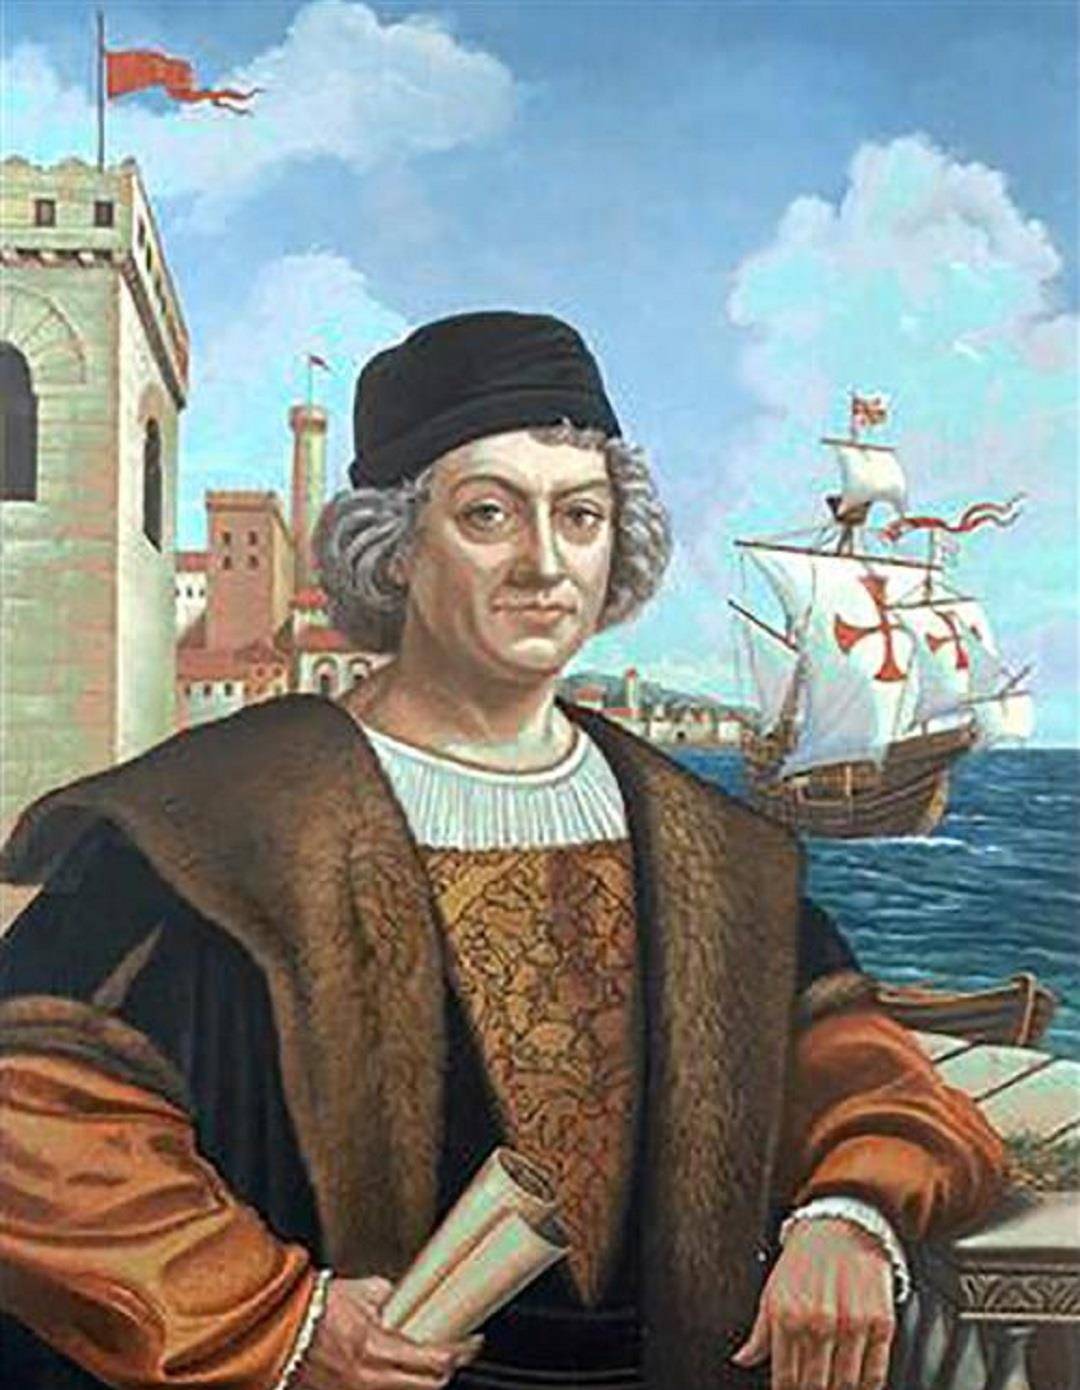 哥伦布于1492年发现新大陆,此举究竟是过大于功,还是功大于过?